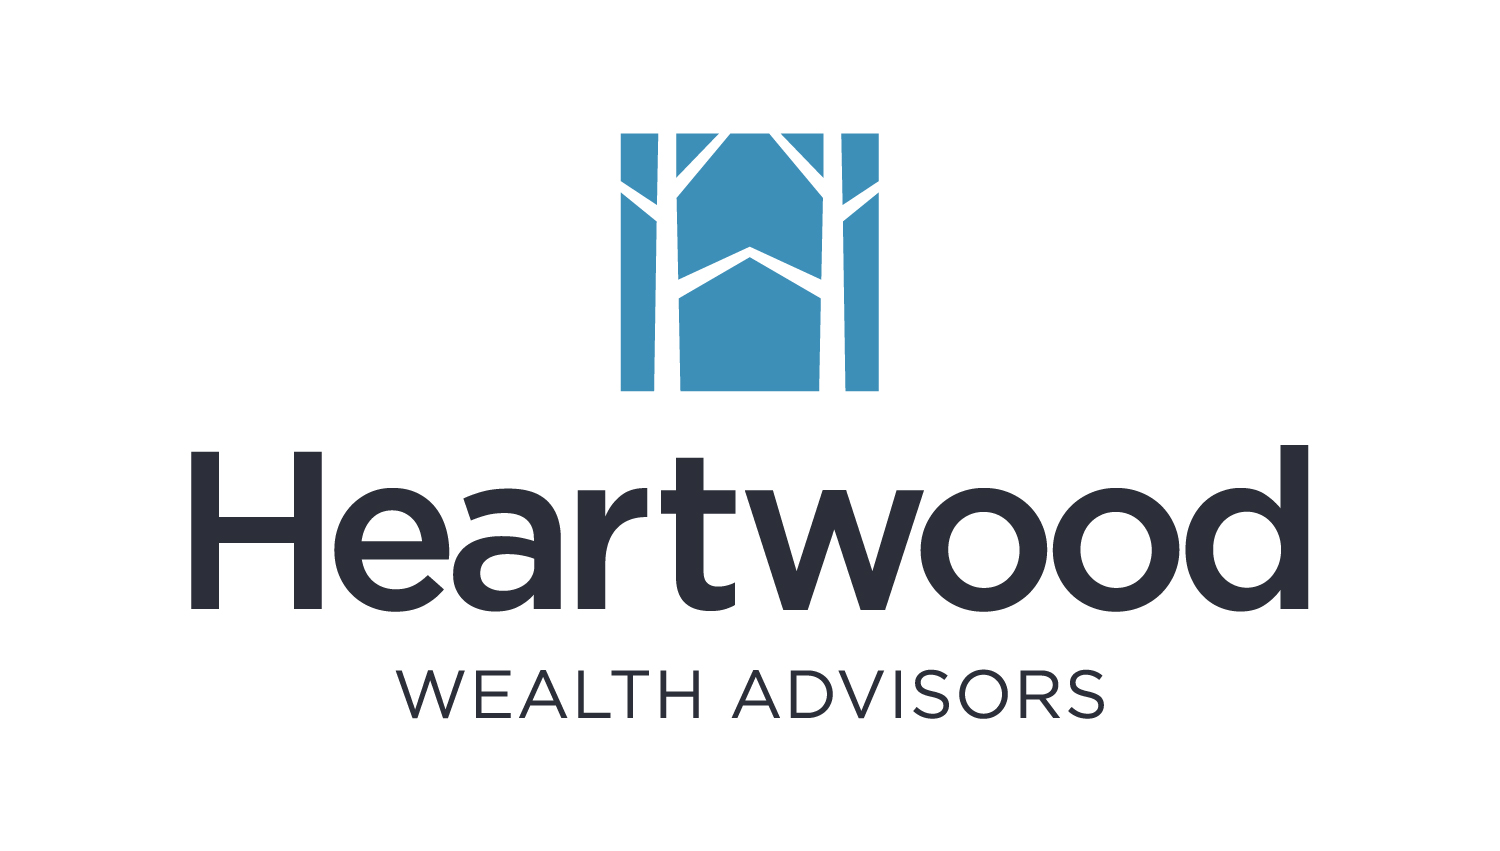 Heartwood Wealth Advisors